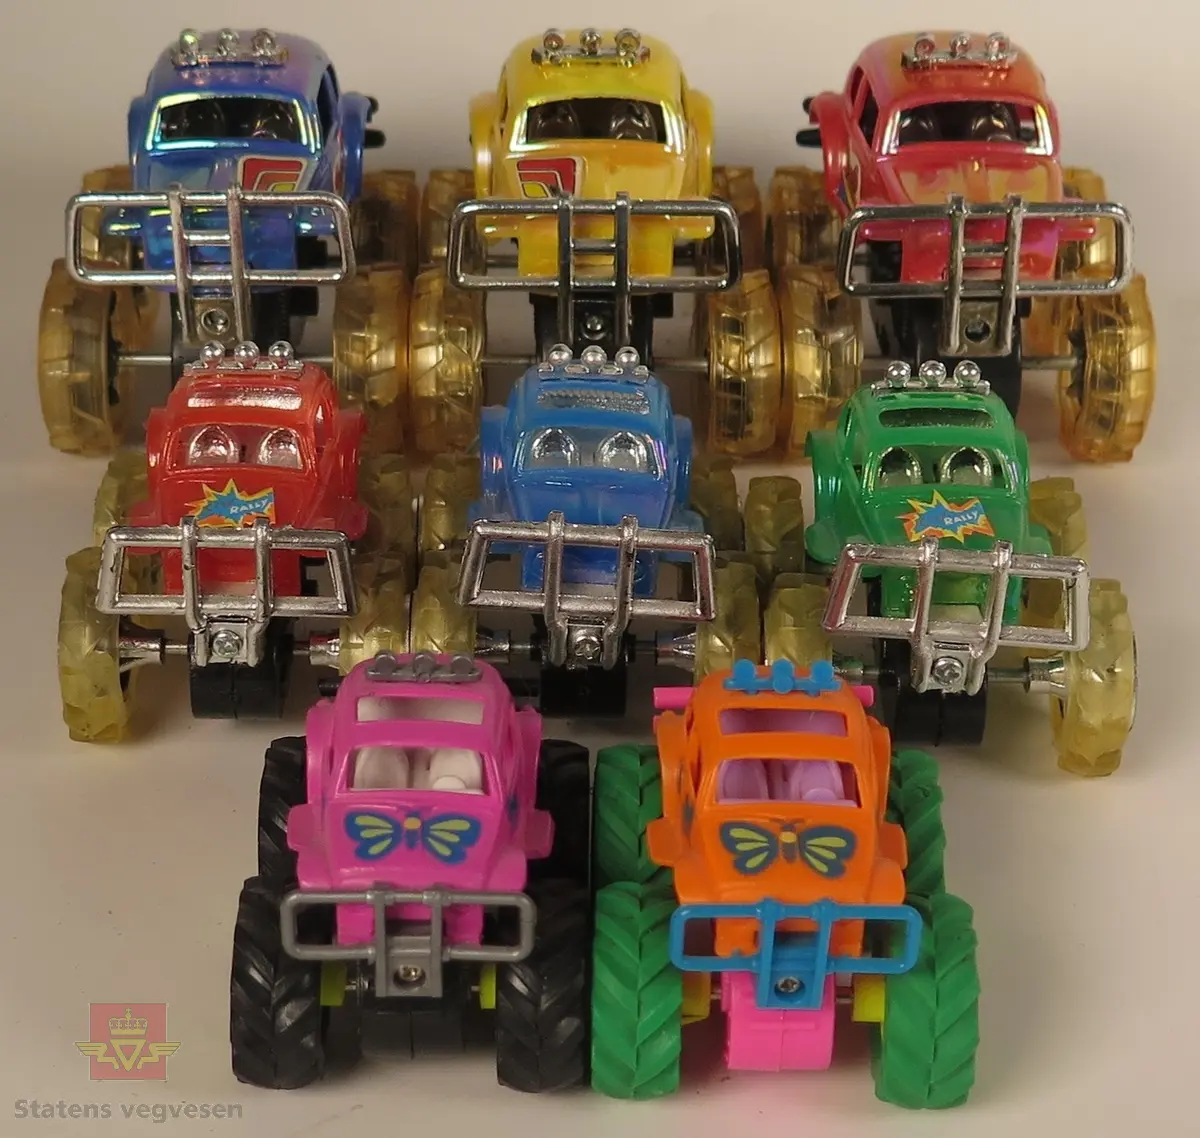 Samling av 8 "monstertruck" modellbiler. Bilen på bilde nr. Det er 2 røde, 2 blåe, 1 rosa, 1 grønn, 1 oransje og 1 gul bil. Alle bilene er laget av plast.